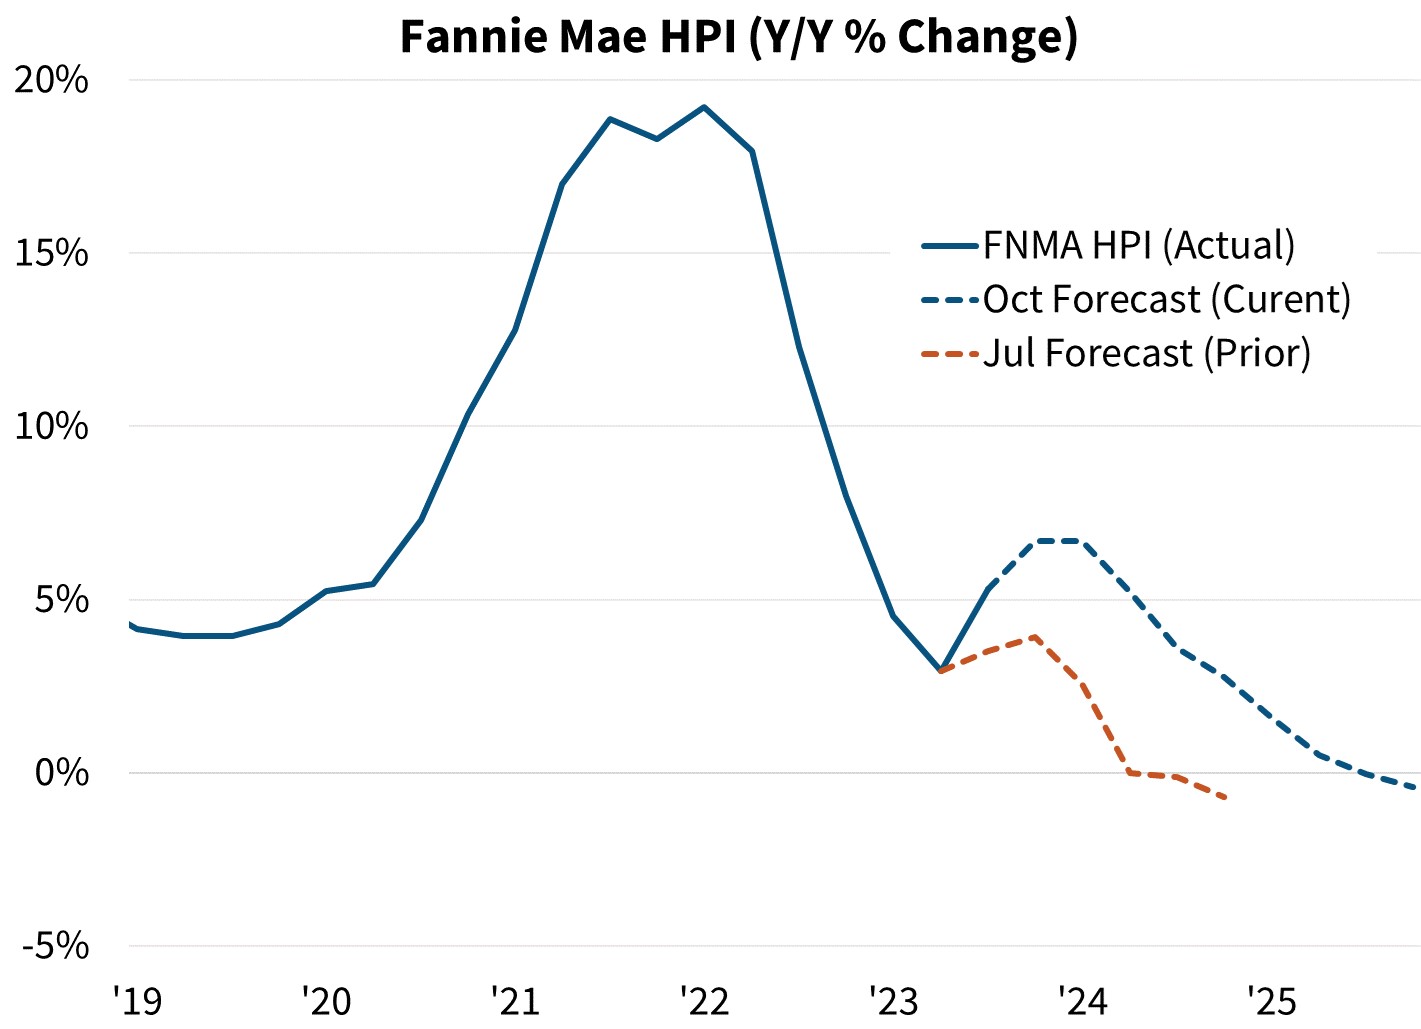 Fannie Mae HPI (Y/Y % Change)